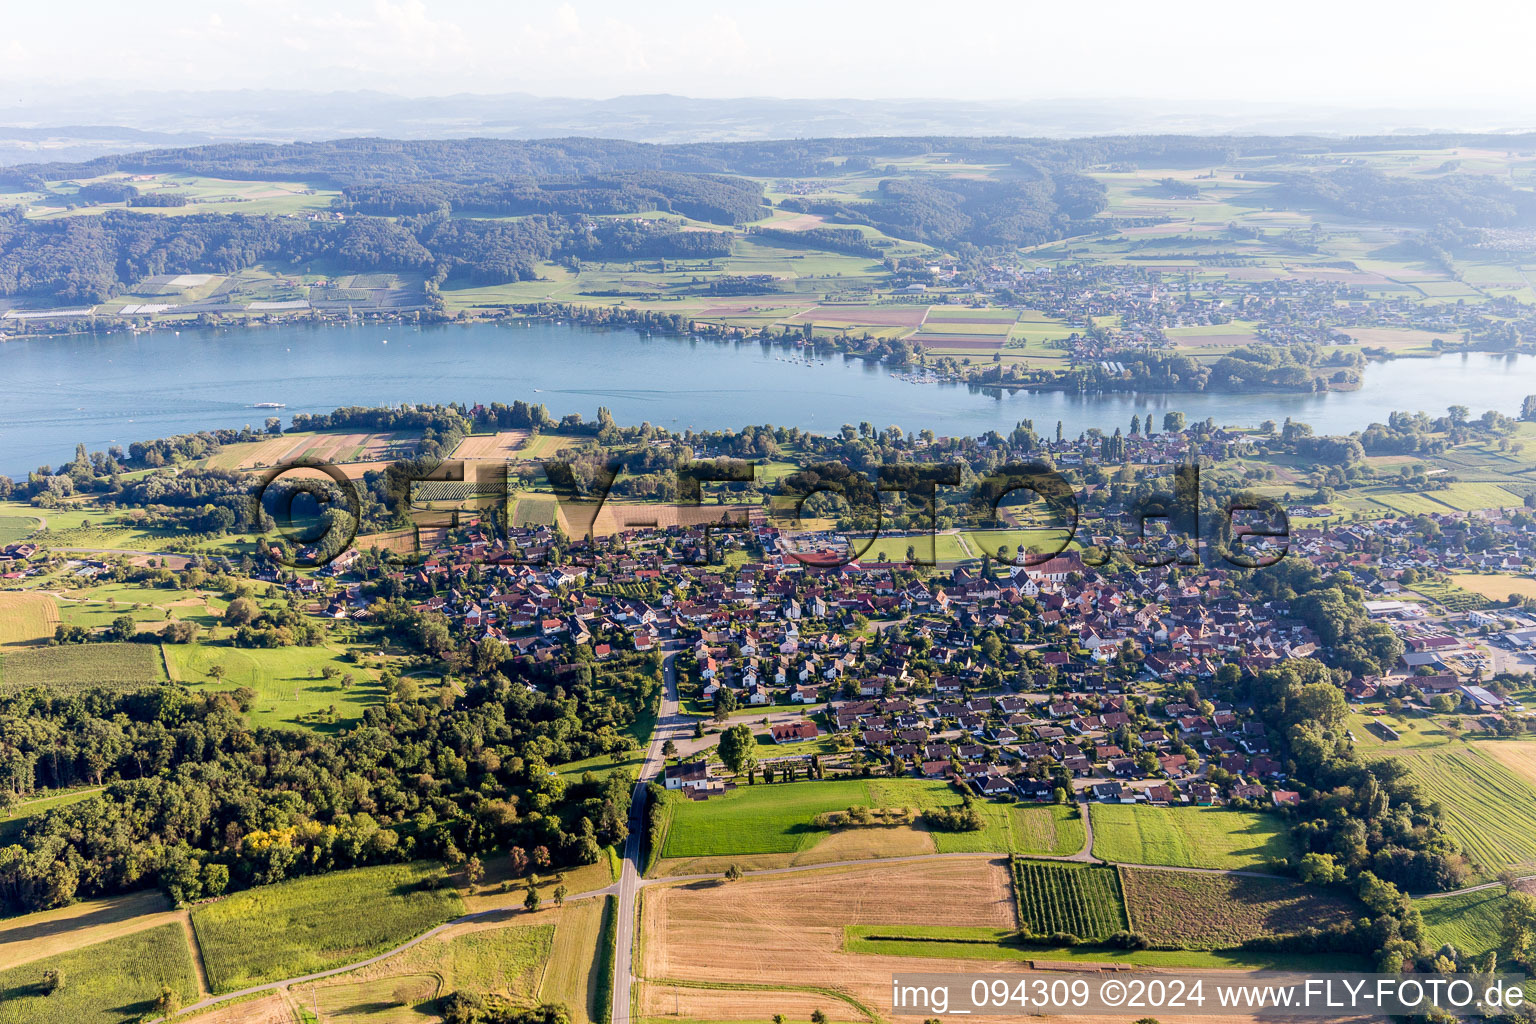 Vue aérienne de Zones riveraines du Rhin et du lac de Constance à Öhningen dans le département Bade-Wurtemberg, Allemagne